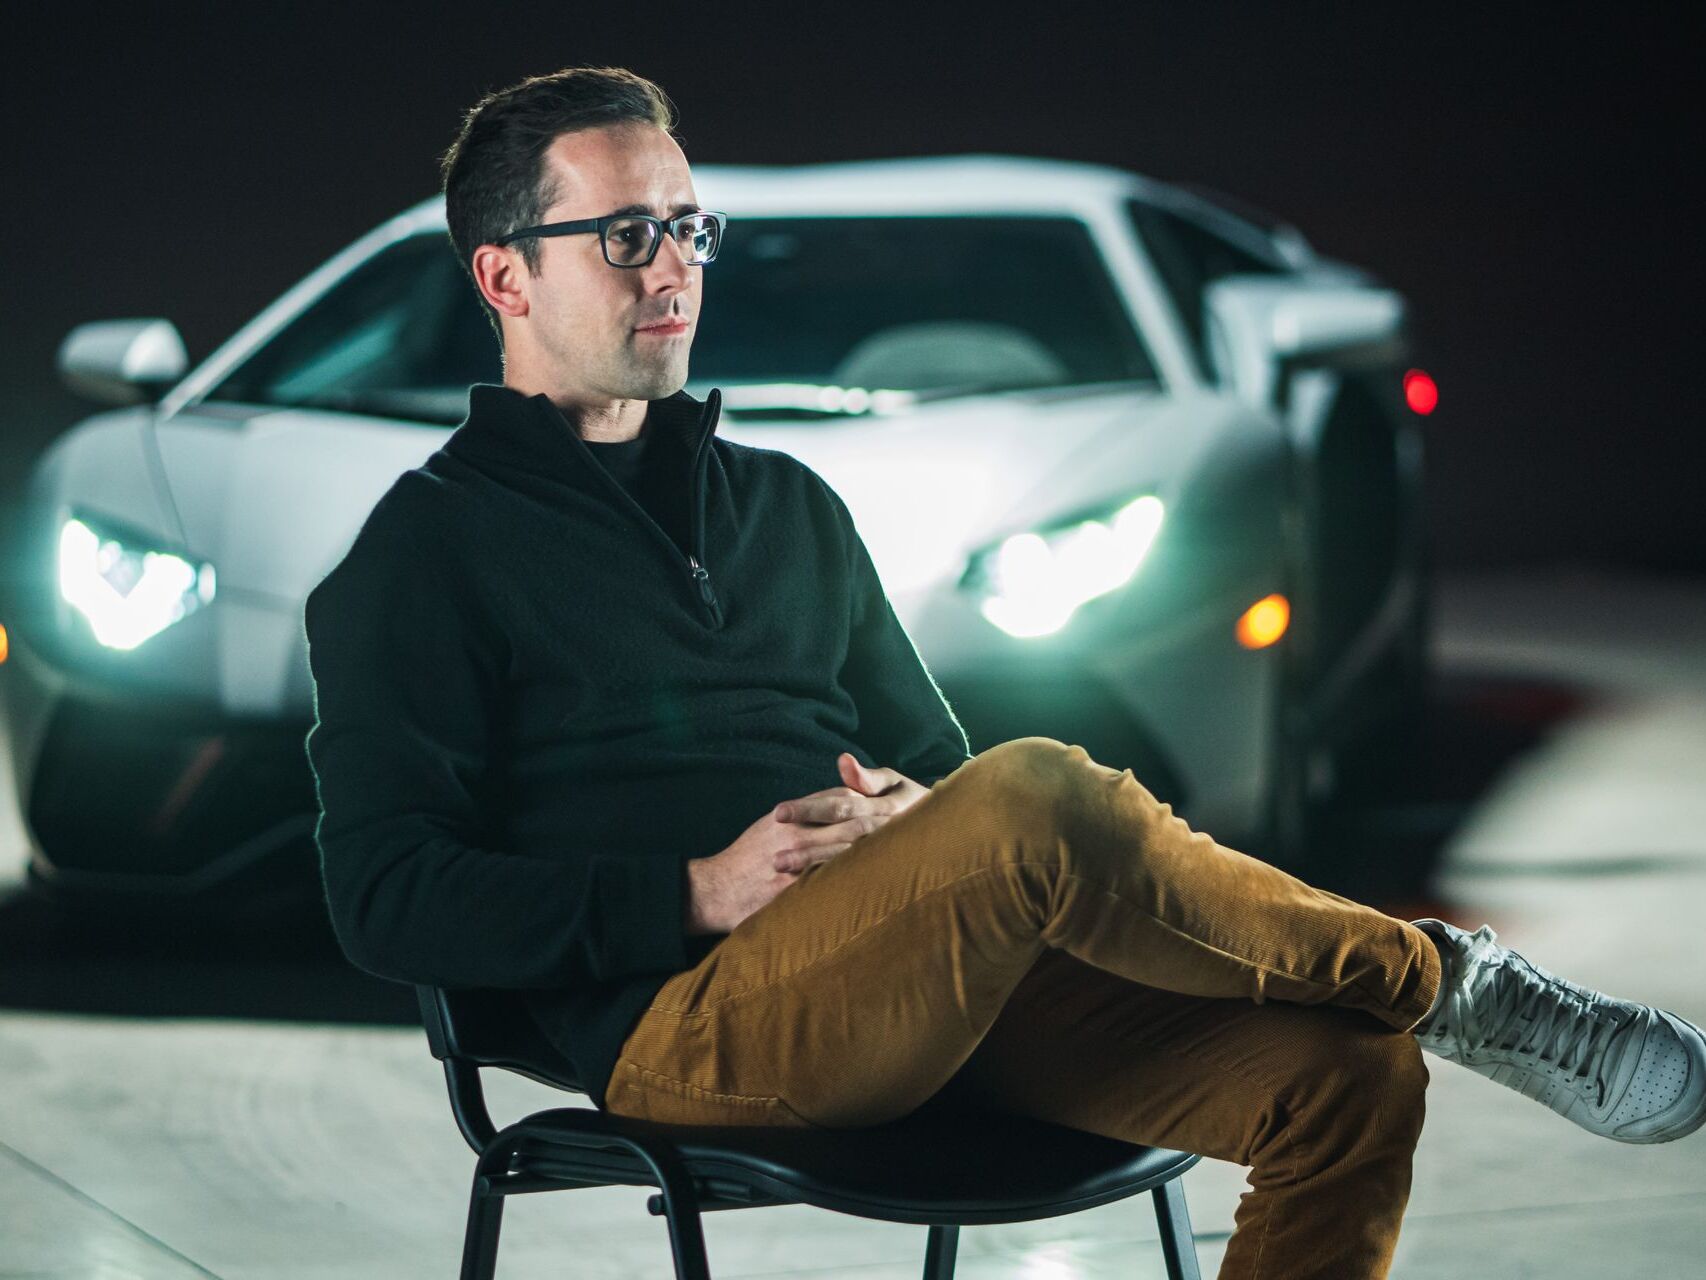 El suís Fabian Oefner és l'artista designat per Lamborghini per la seva clau espacial